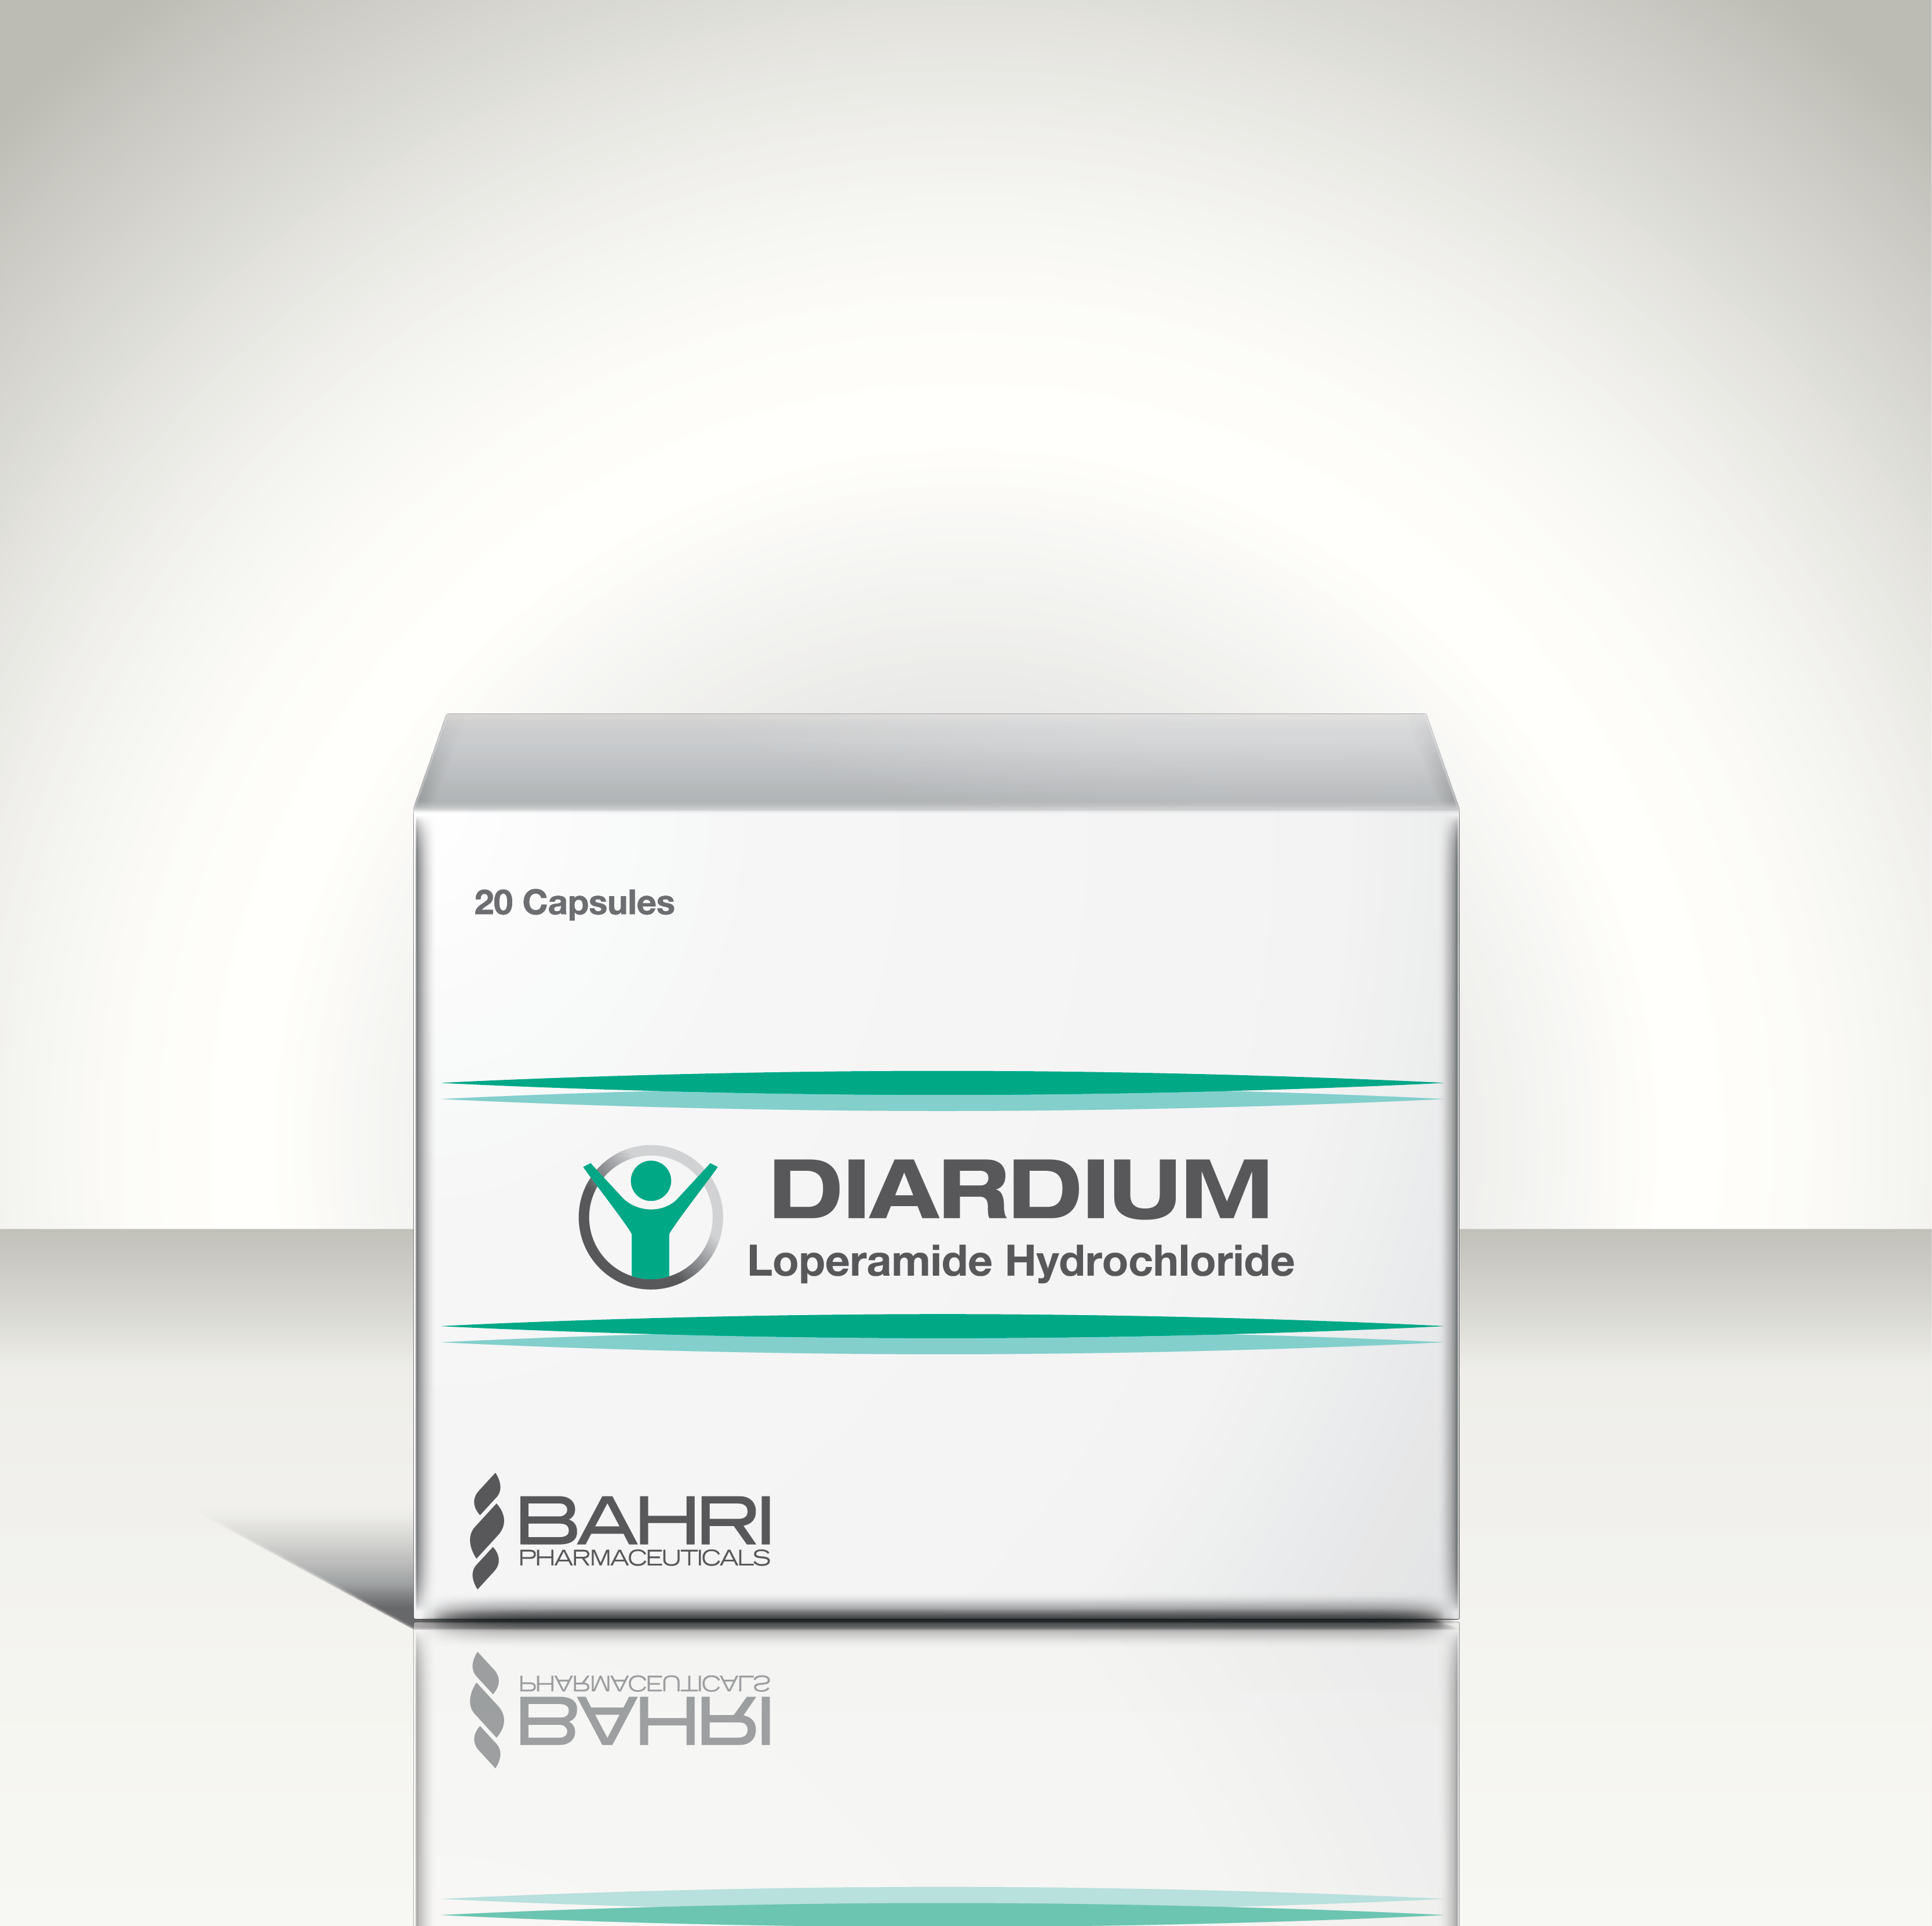 Diardium